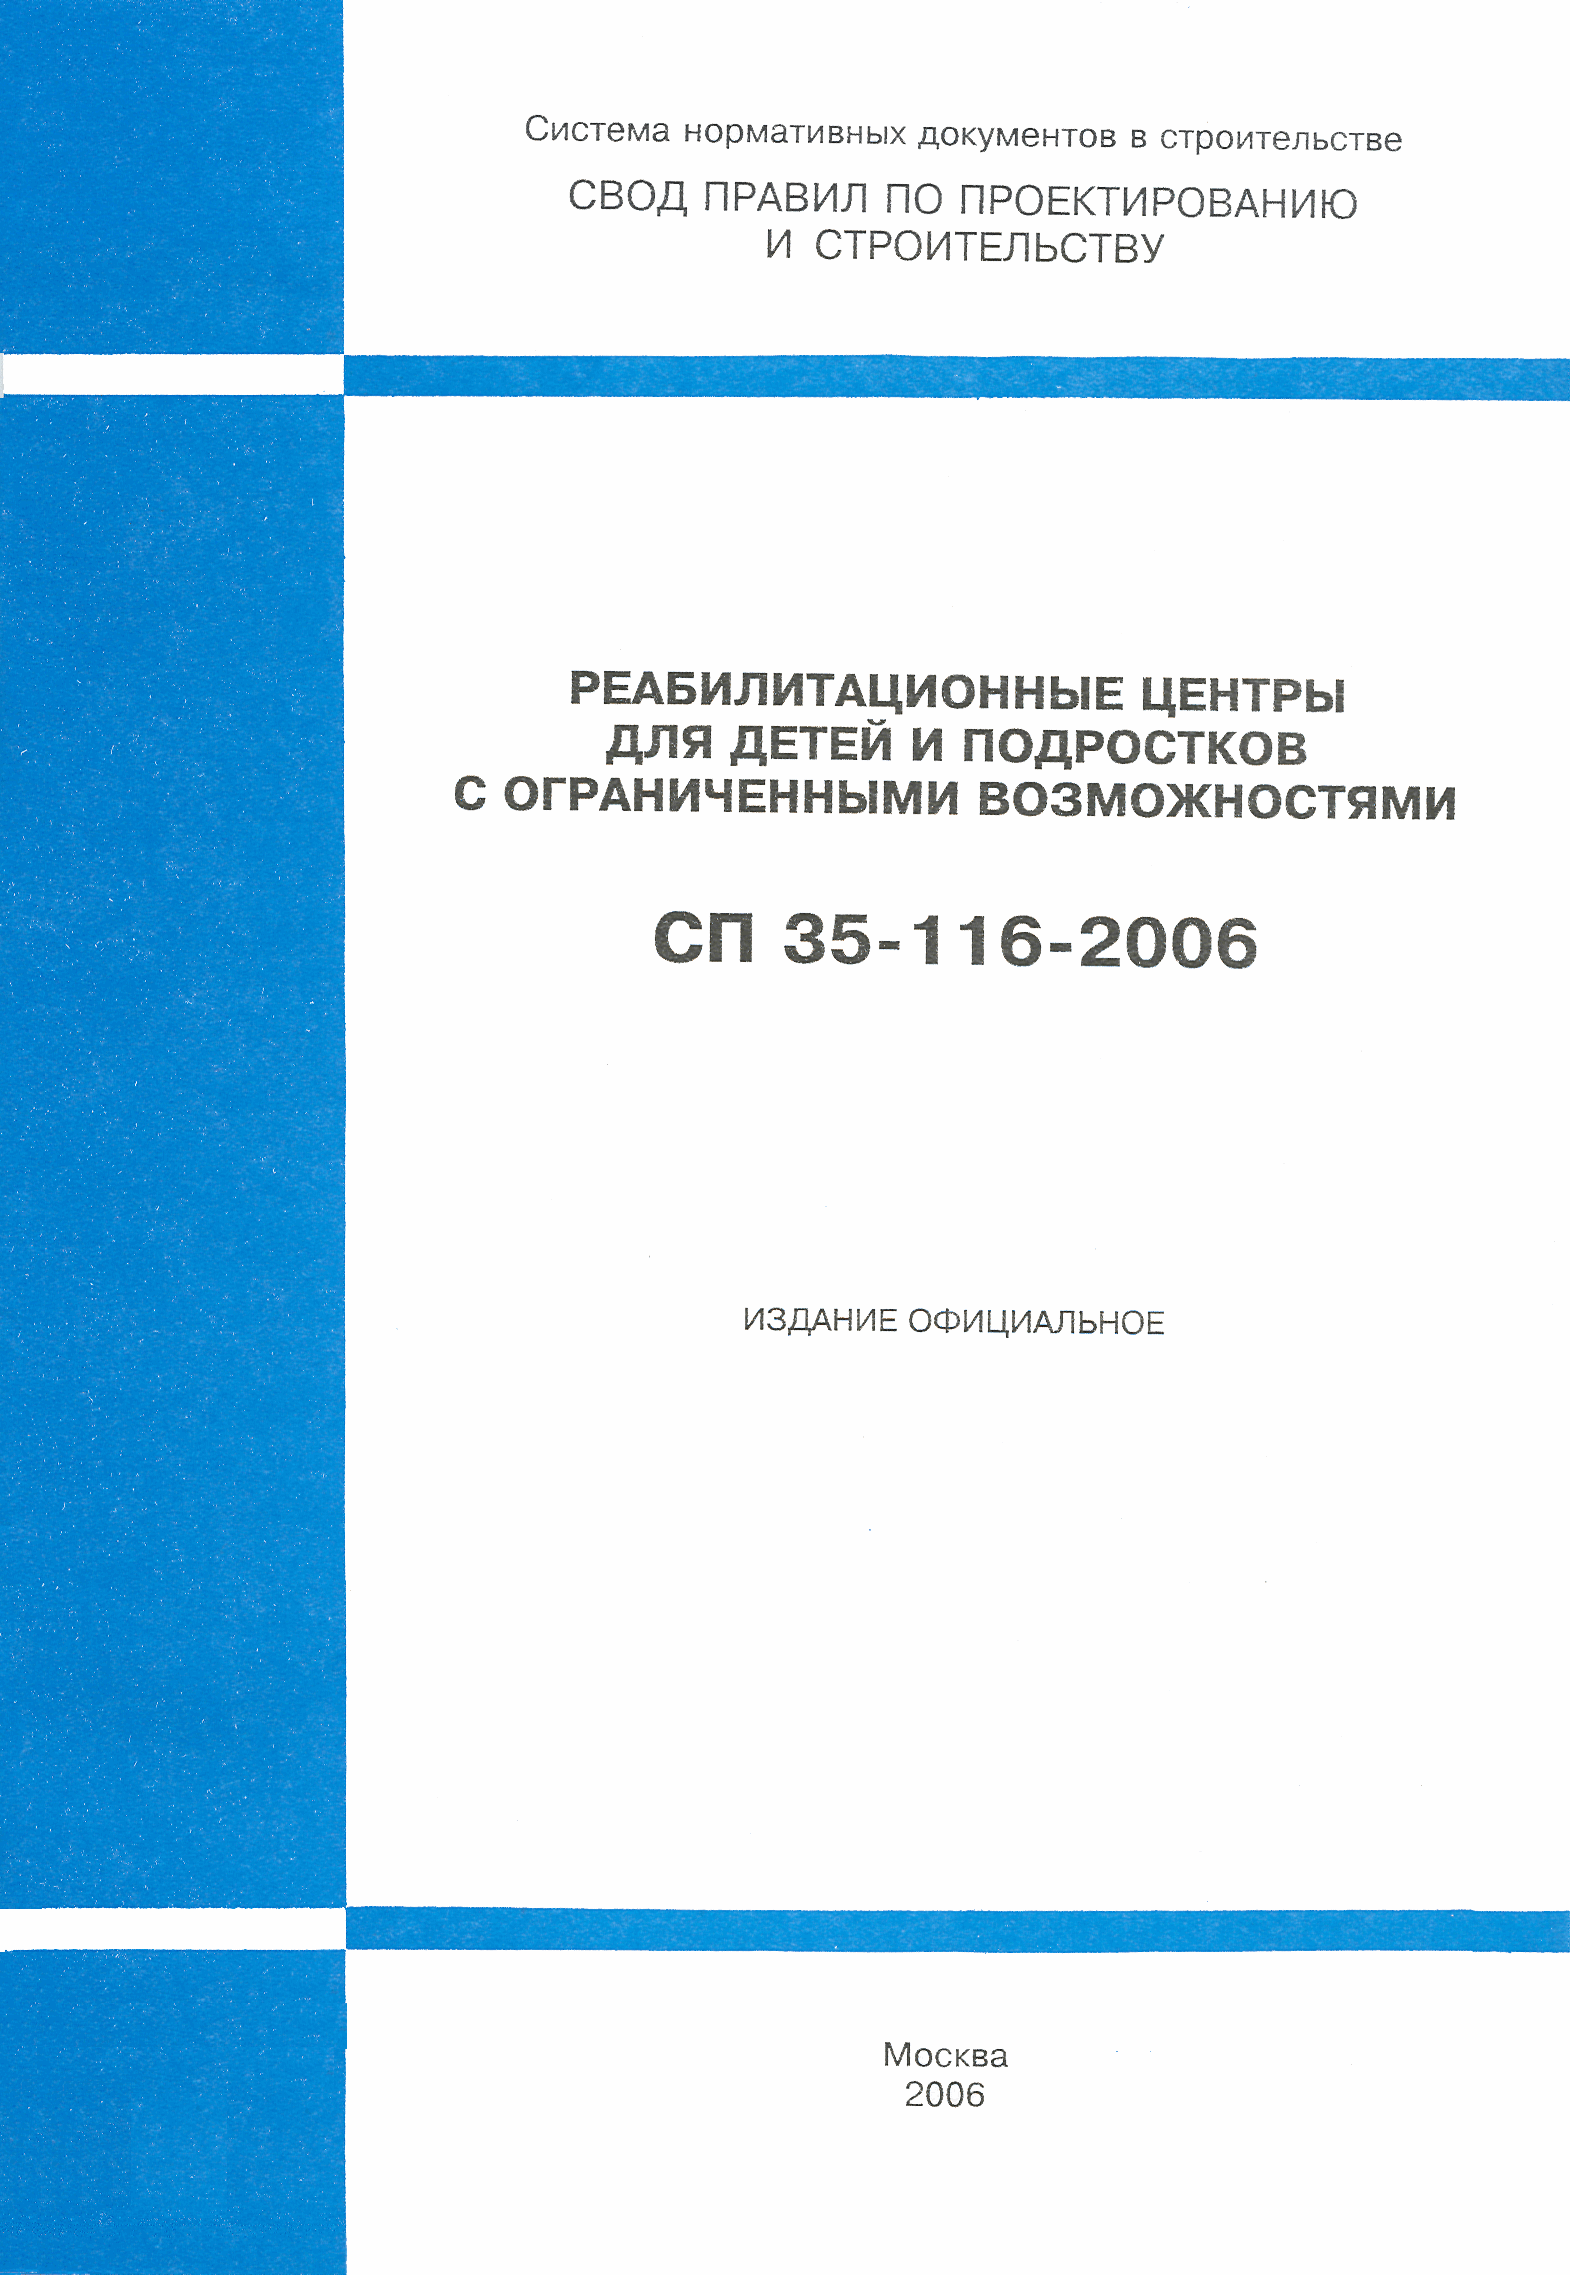 СП 35-116-2006